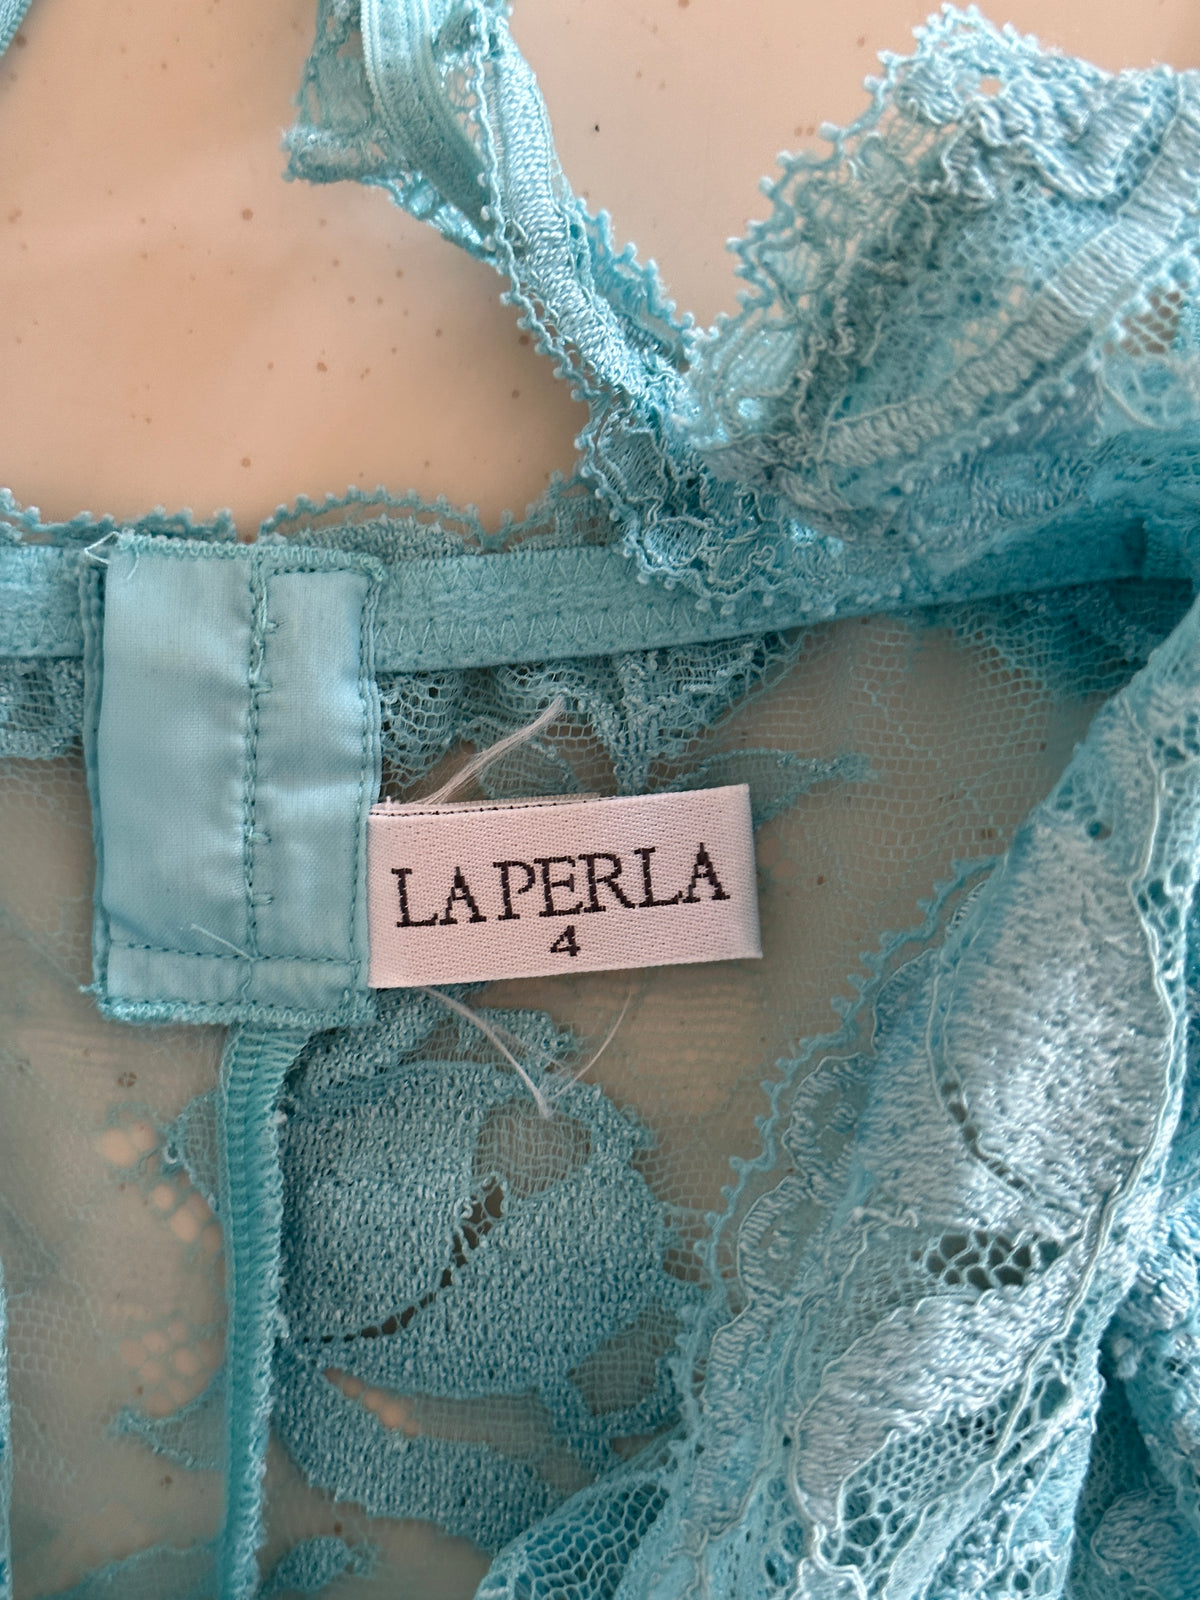 La Perla Lingerie Dress (s/m)